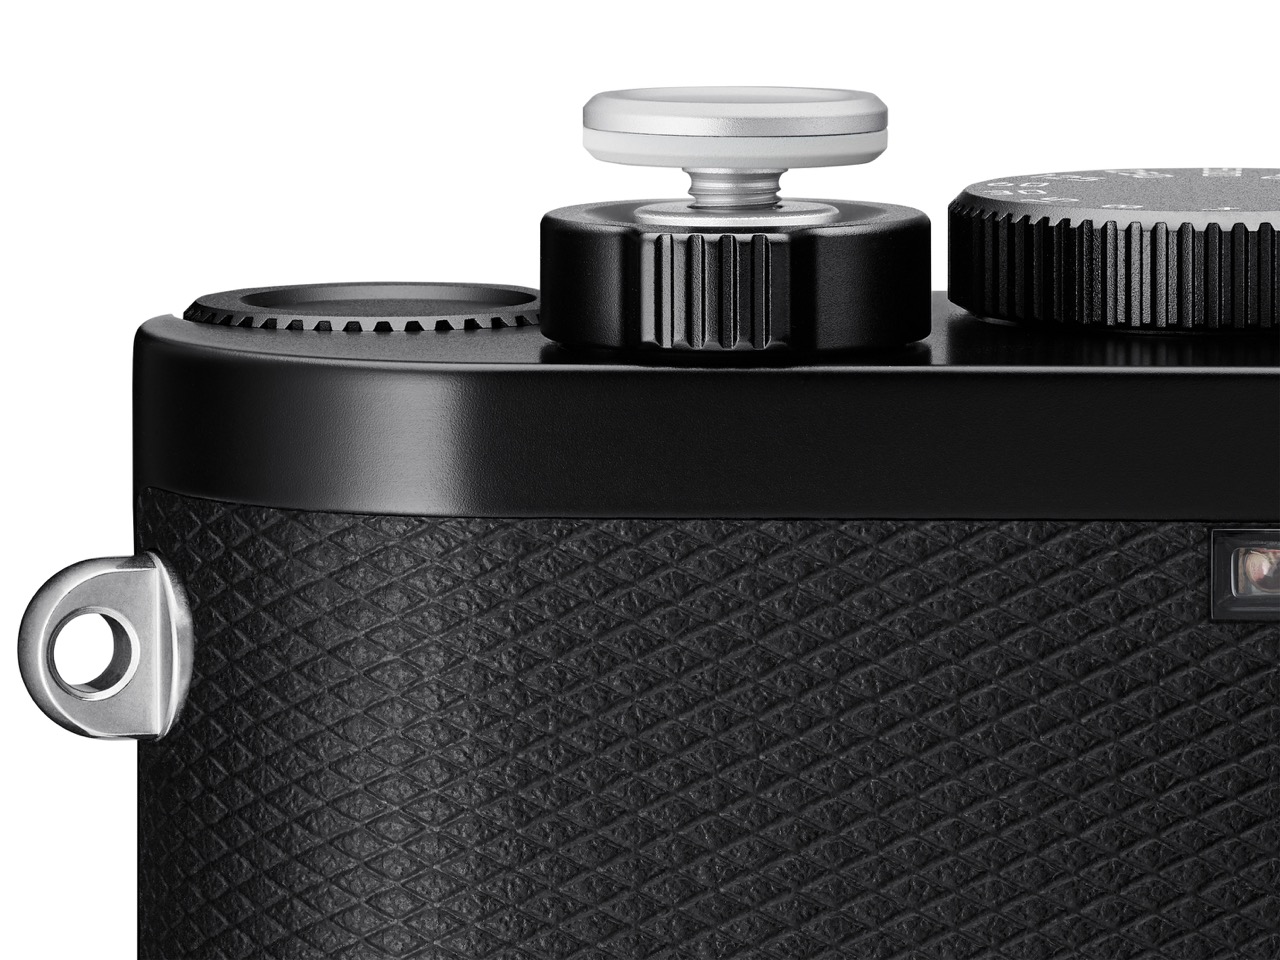 Leica Soft Release Button in Silber auf Kamera